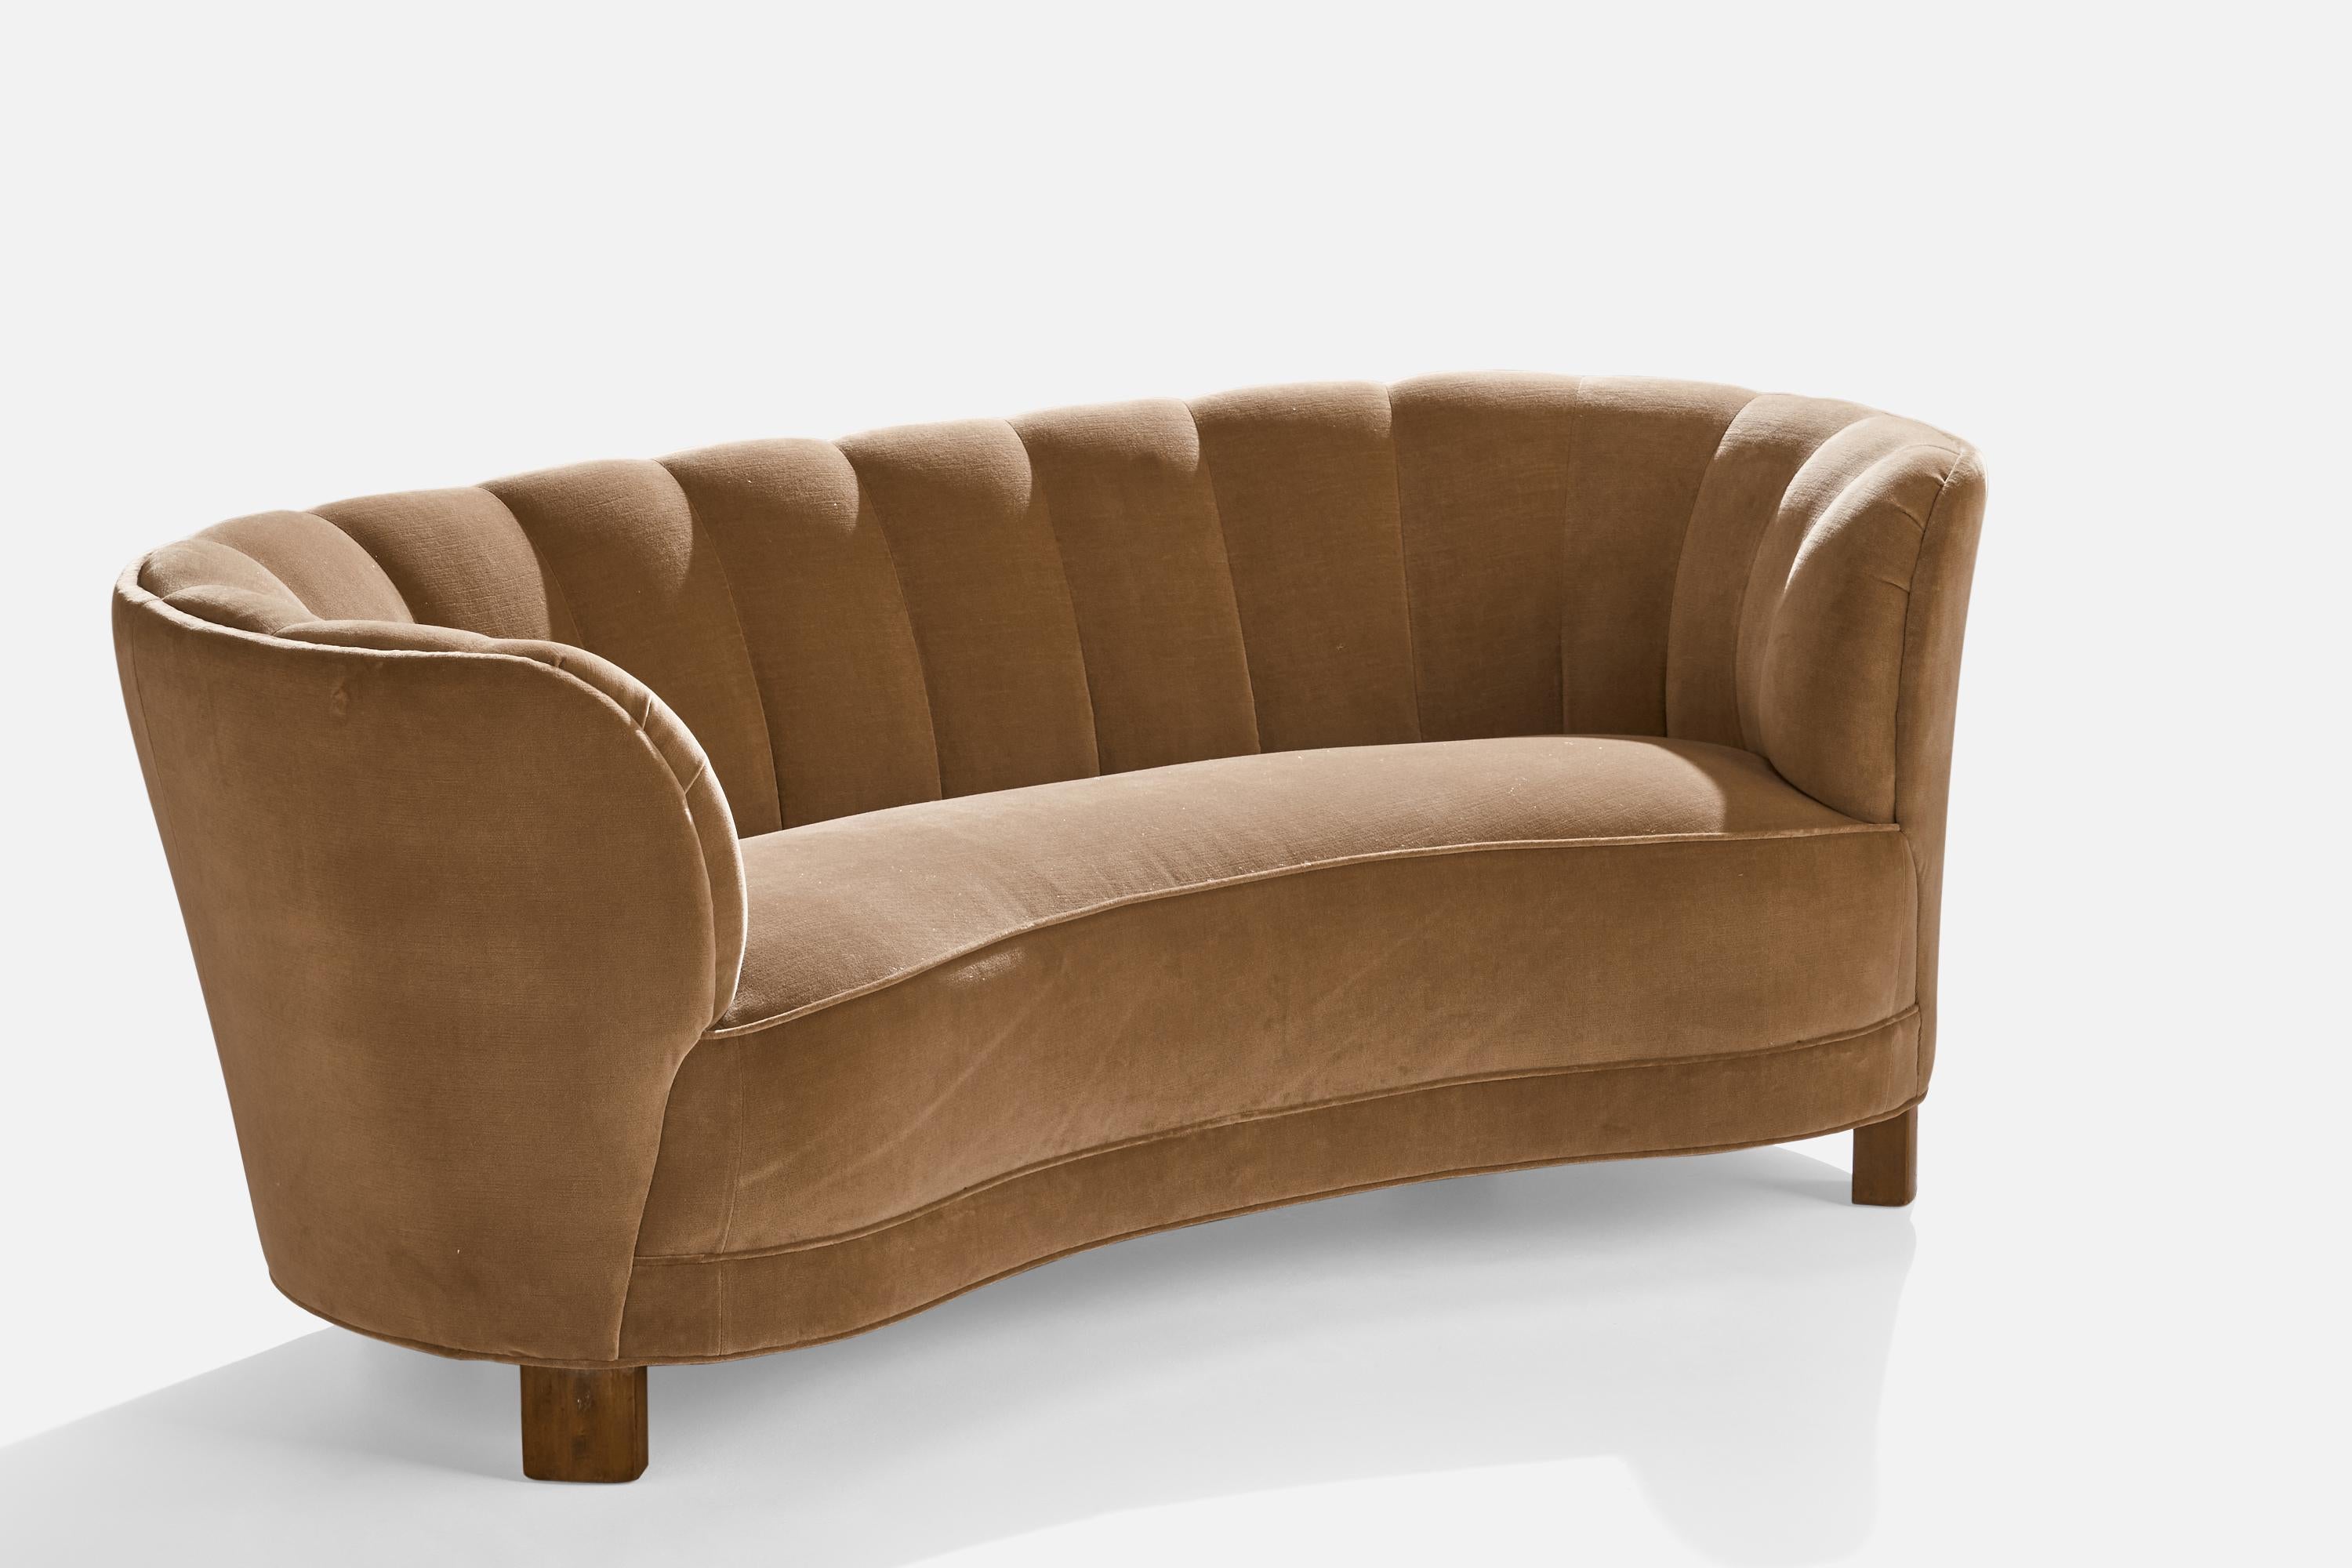 Ein Sofa aus braunem Samt und dunkel gebeiztem Holz, entworfen und hergestellt in Dänemark, 1940er Jahre.

Sitzhöhe 16